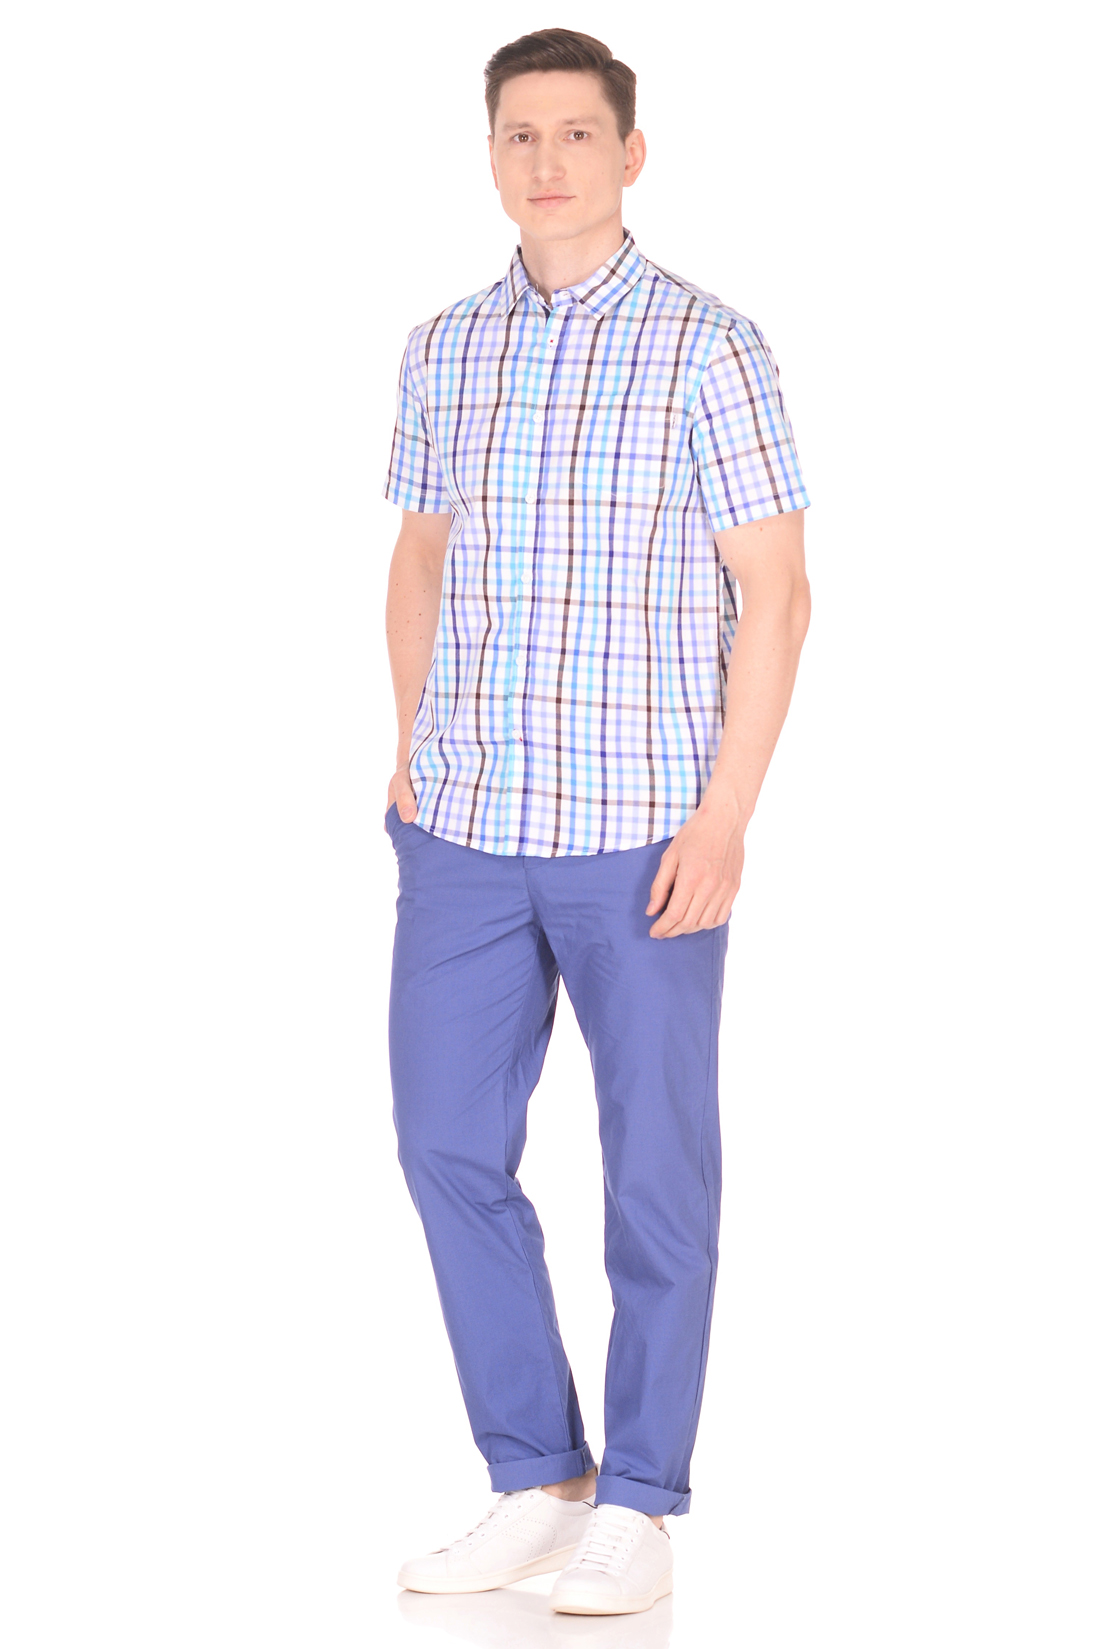 Рубашка с коротким рукавом в яркую клетку (арт. baon B688008), размер S, цвет синий Рубашка с коротким рукавом в яркую клетку (арт. baon B688008) - фото 3